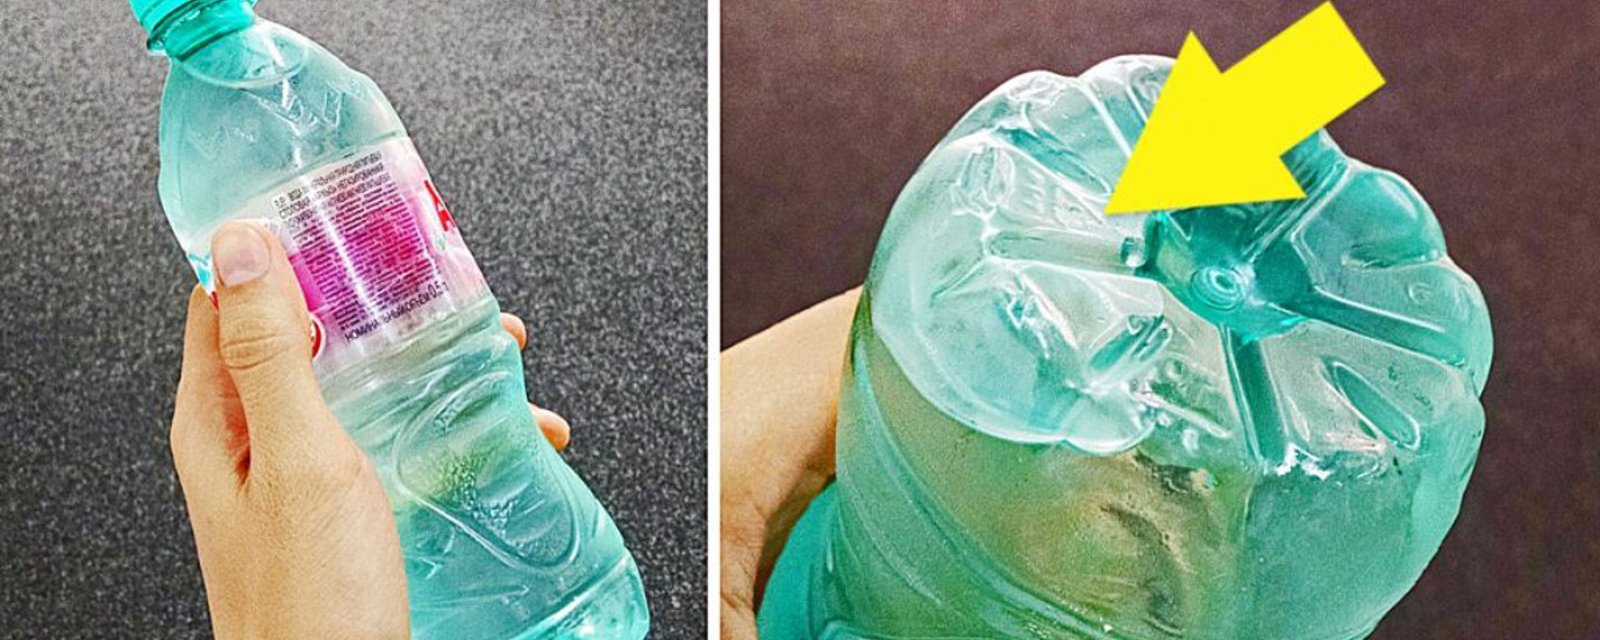 4 secrets bien gardés à propos des bouteilles d'eau